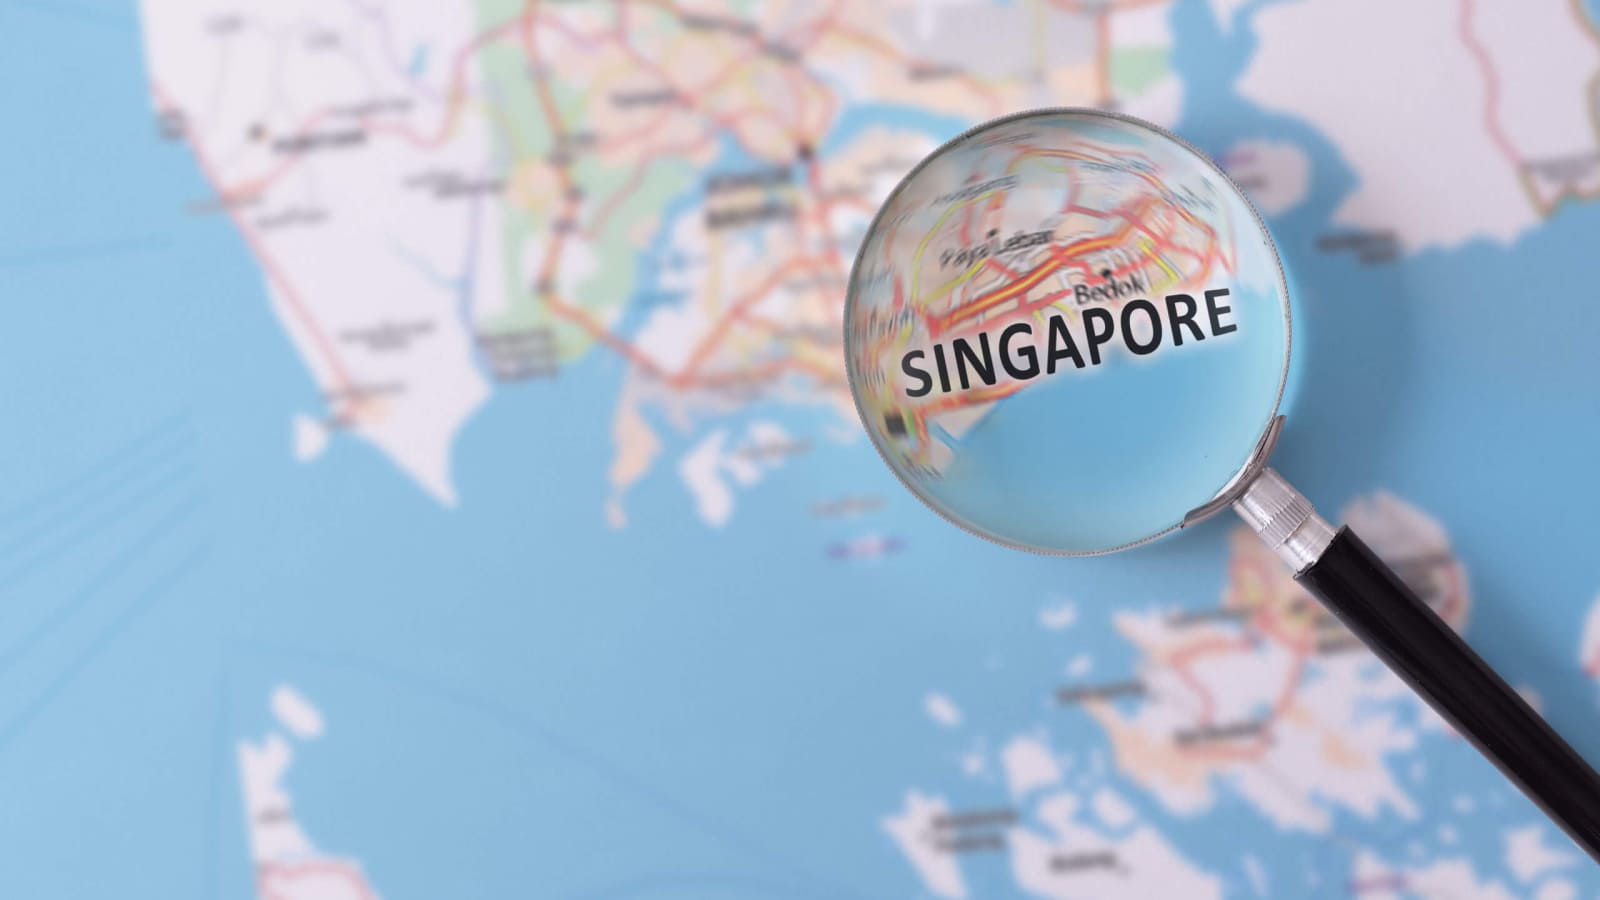 Сингапур предоставляет финансовую поддержку для открытия it бизнеса.